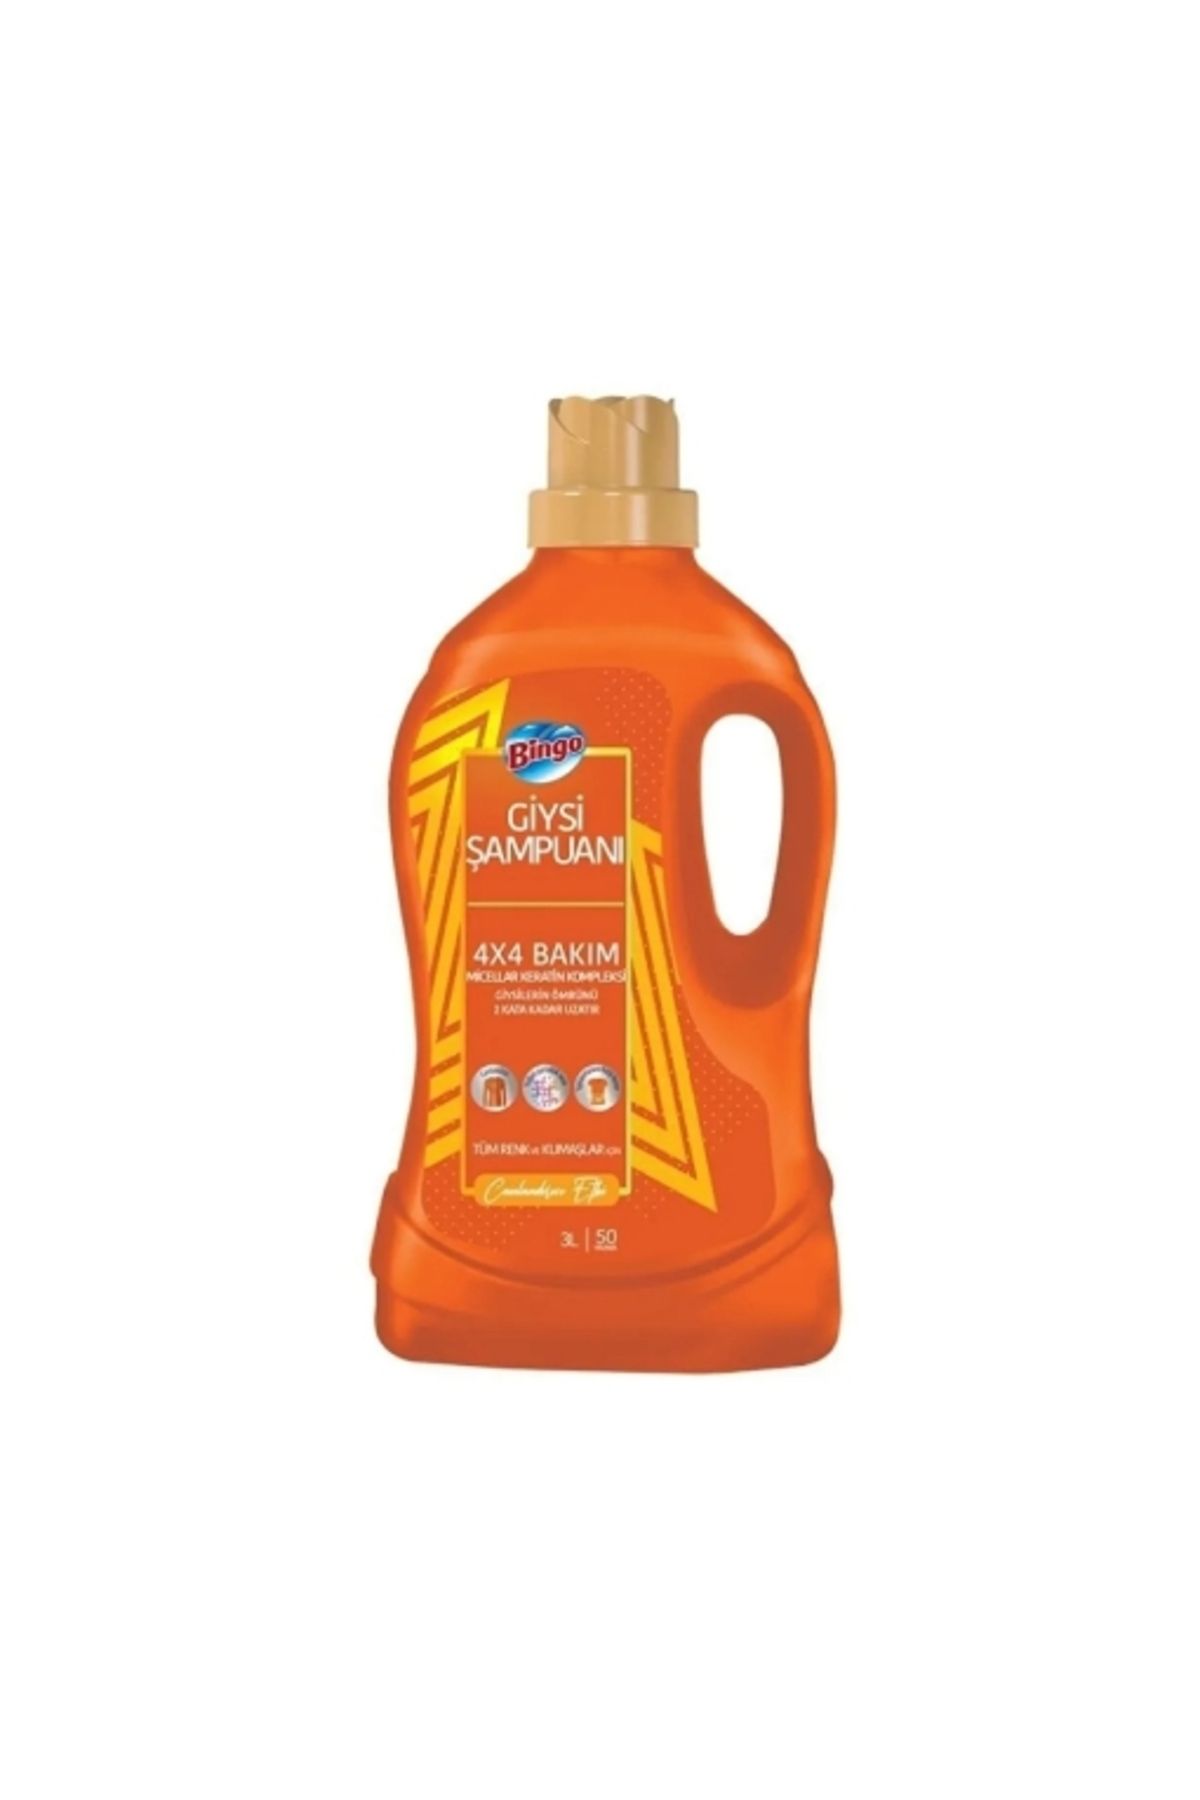 Bingo Matik Sıvı Deterjan 3 Lt. Giysi Şampuanı Canlandırıcı 50w (24'LÜ)